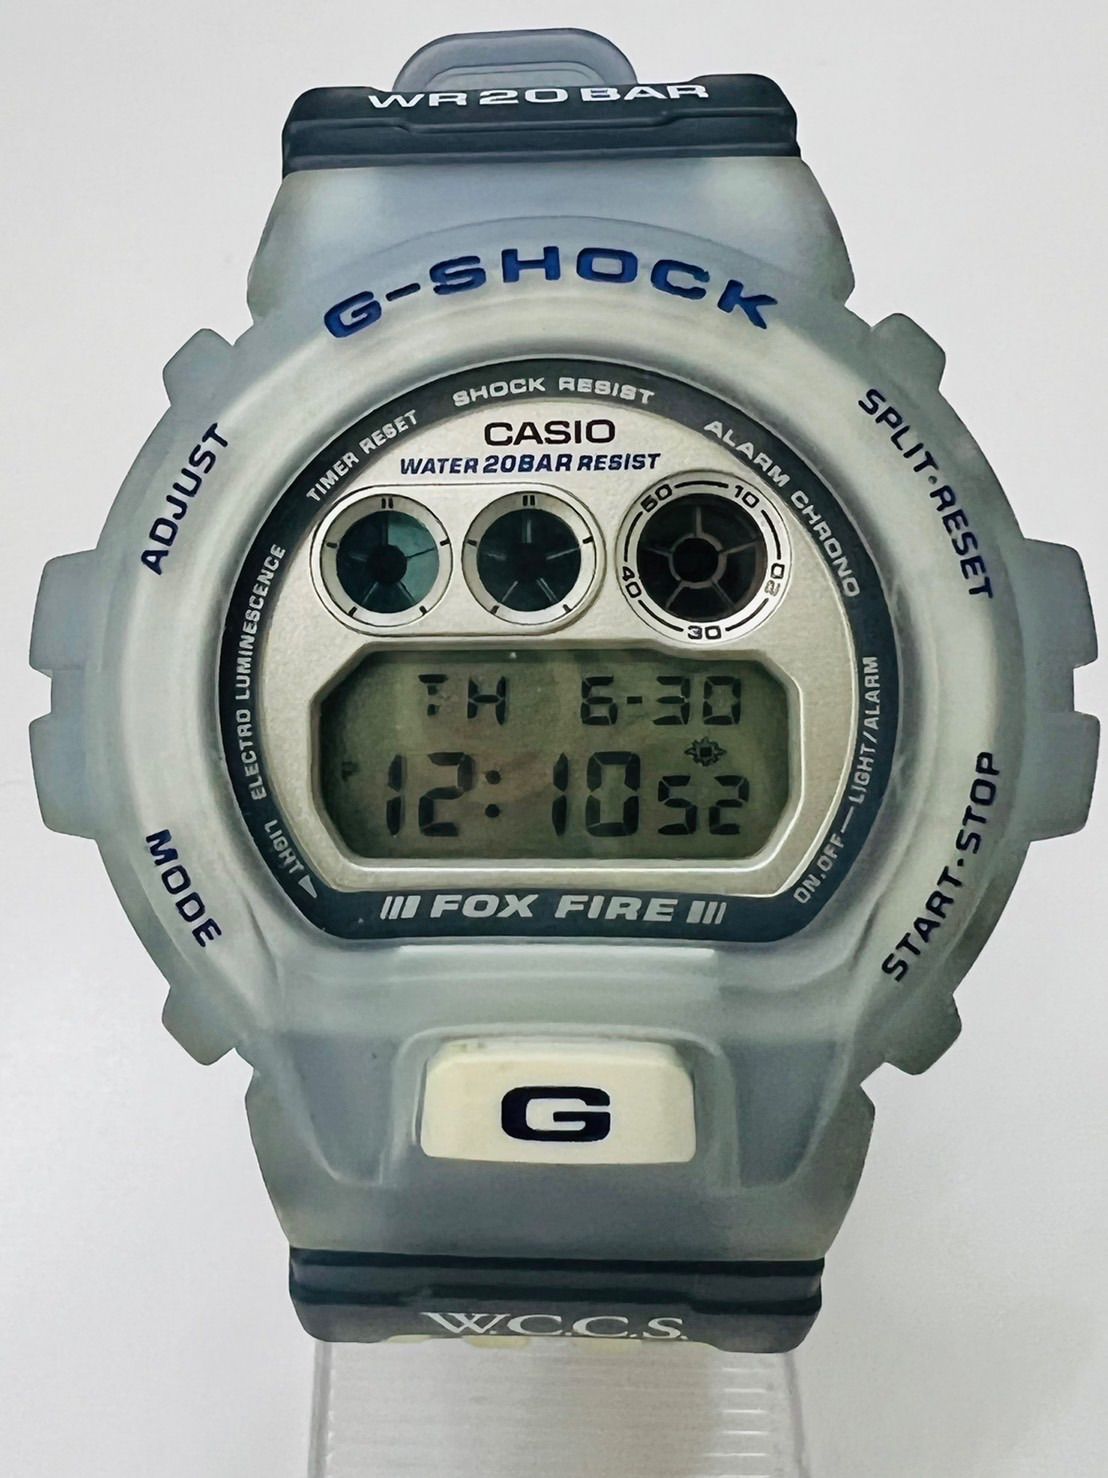 G-SHOCK W.C.C.S. 世界サンゴ礁 DW-6900WC-6T - OTH Watch&jewelry